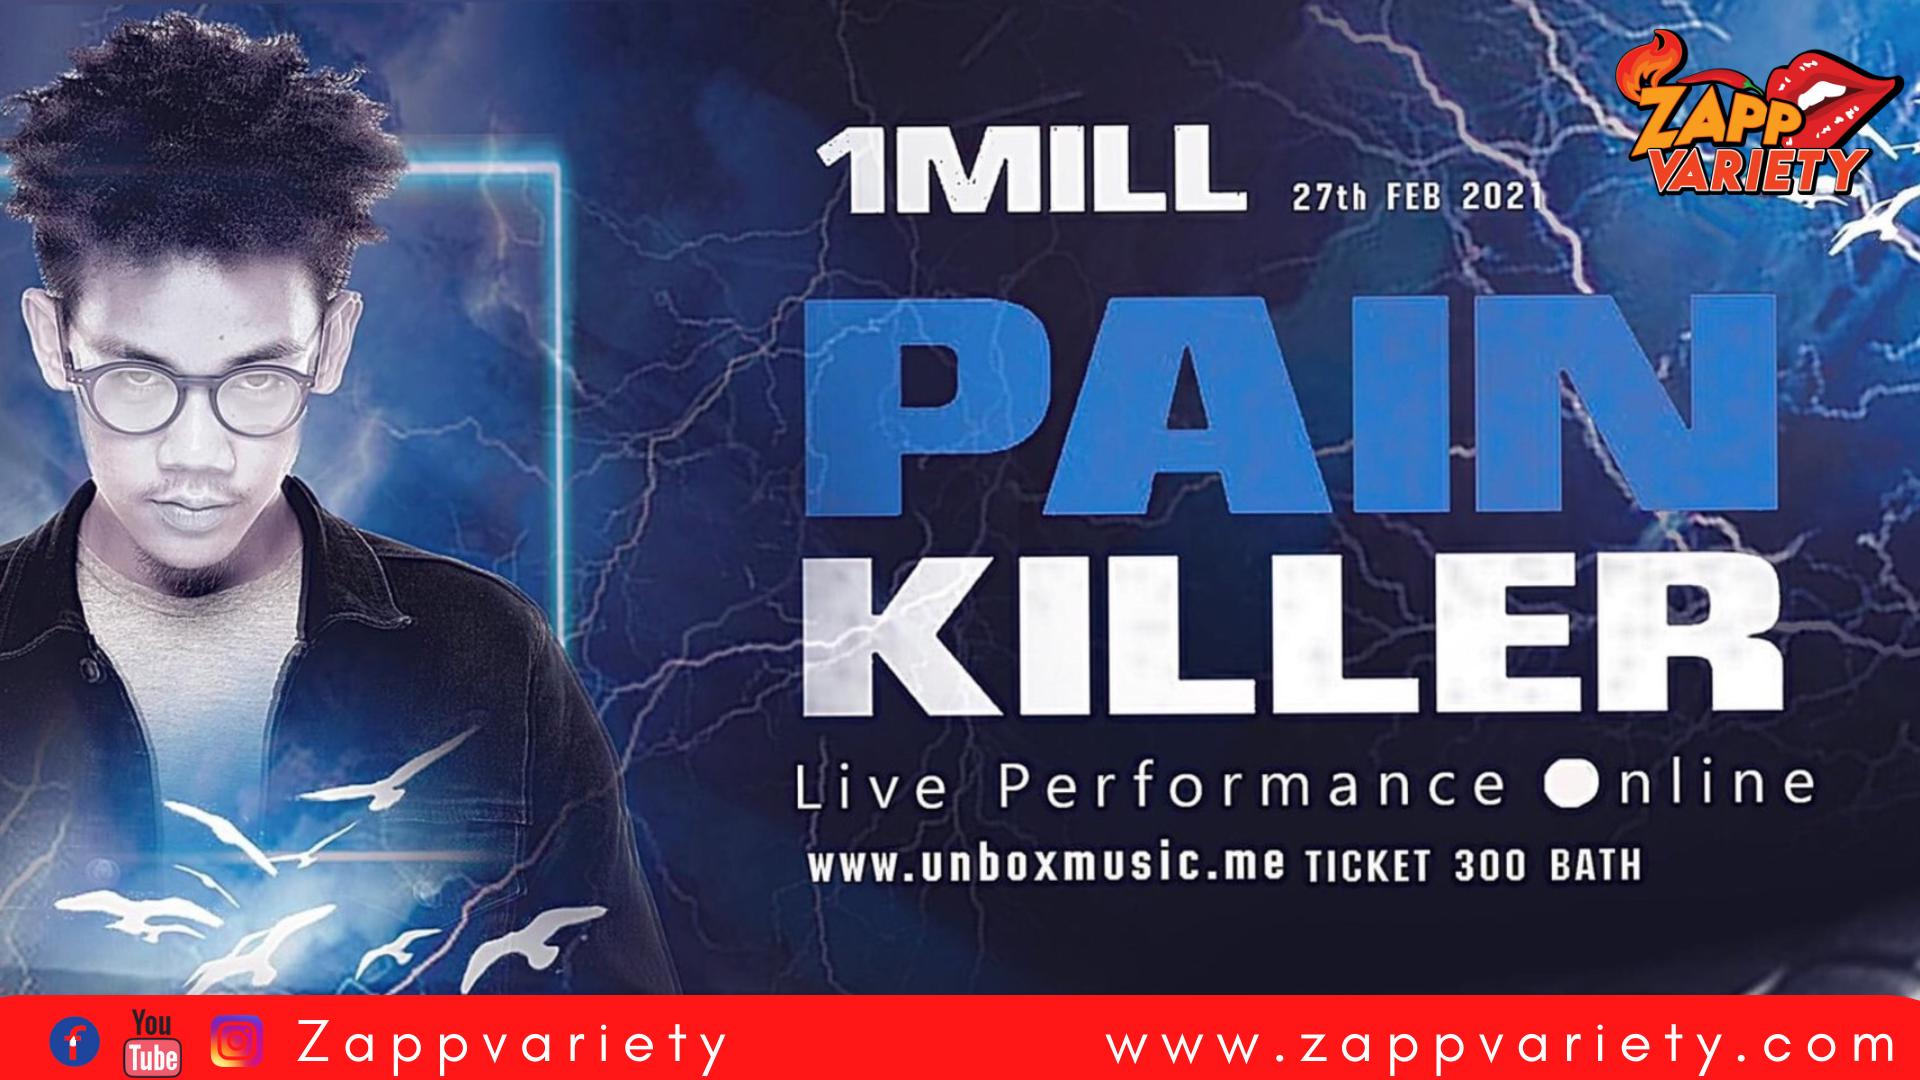 แร็พสตาร์ดาวรุ่ง! 1Mill ลุยคอนเสิร์ตออนไลน์  1MILL Pain Killer Live Performance online